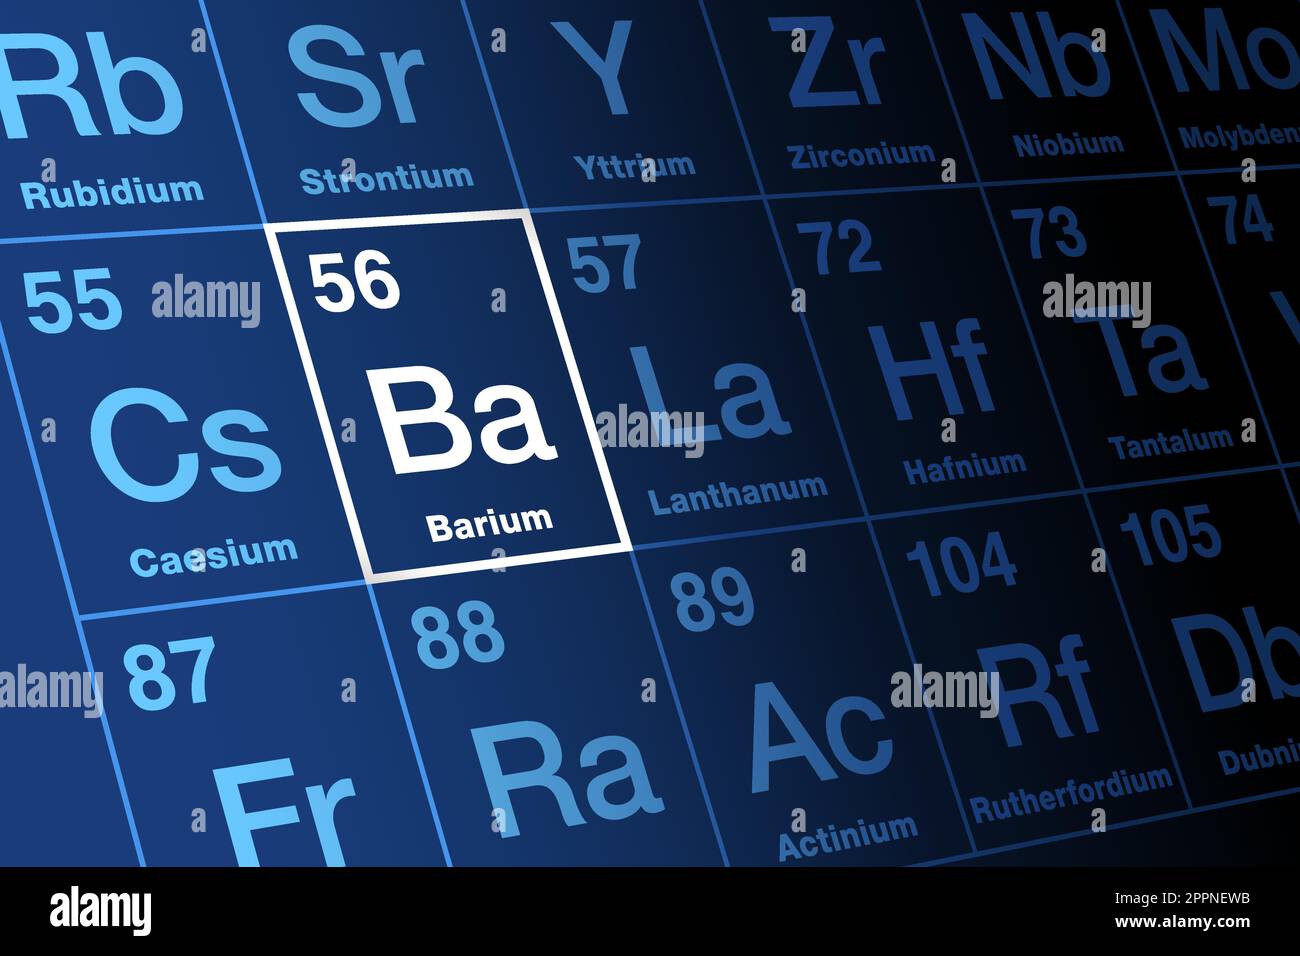 Baryum sur la table périodique des éléments, avec le symbole d'élément Ba Illustration de Vecteur